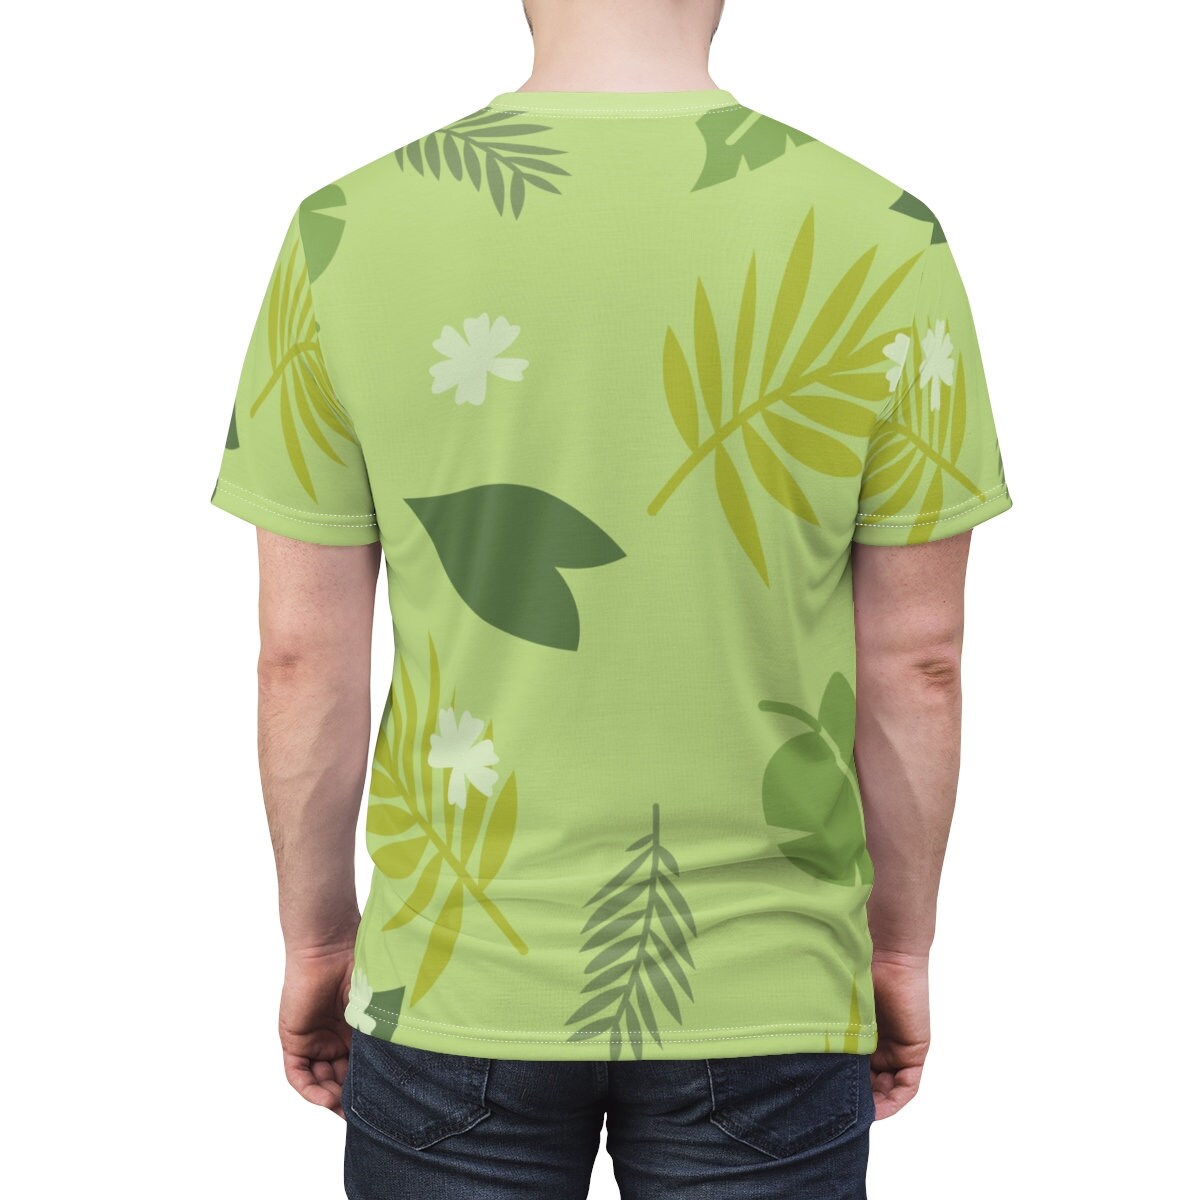 Nick Wilde Fox Zoo Unisex All Over Print Running Costume Shirt | Etsy